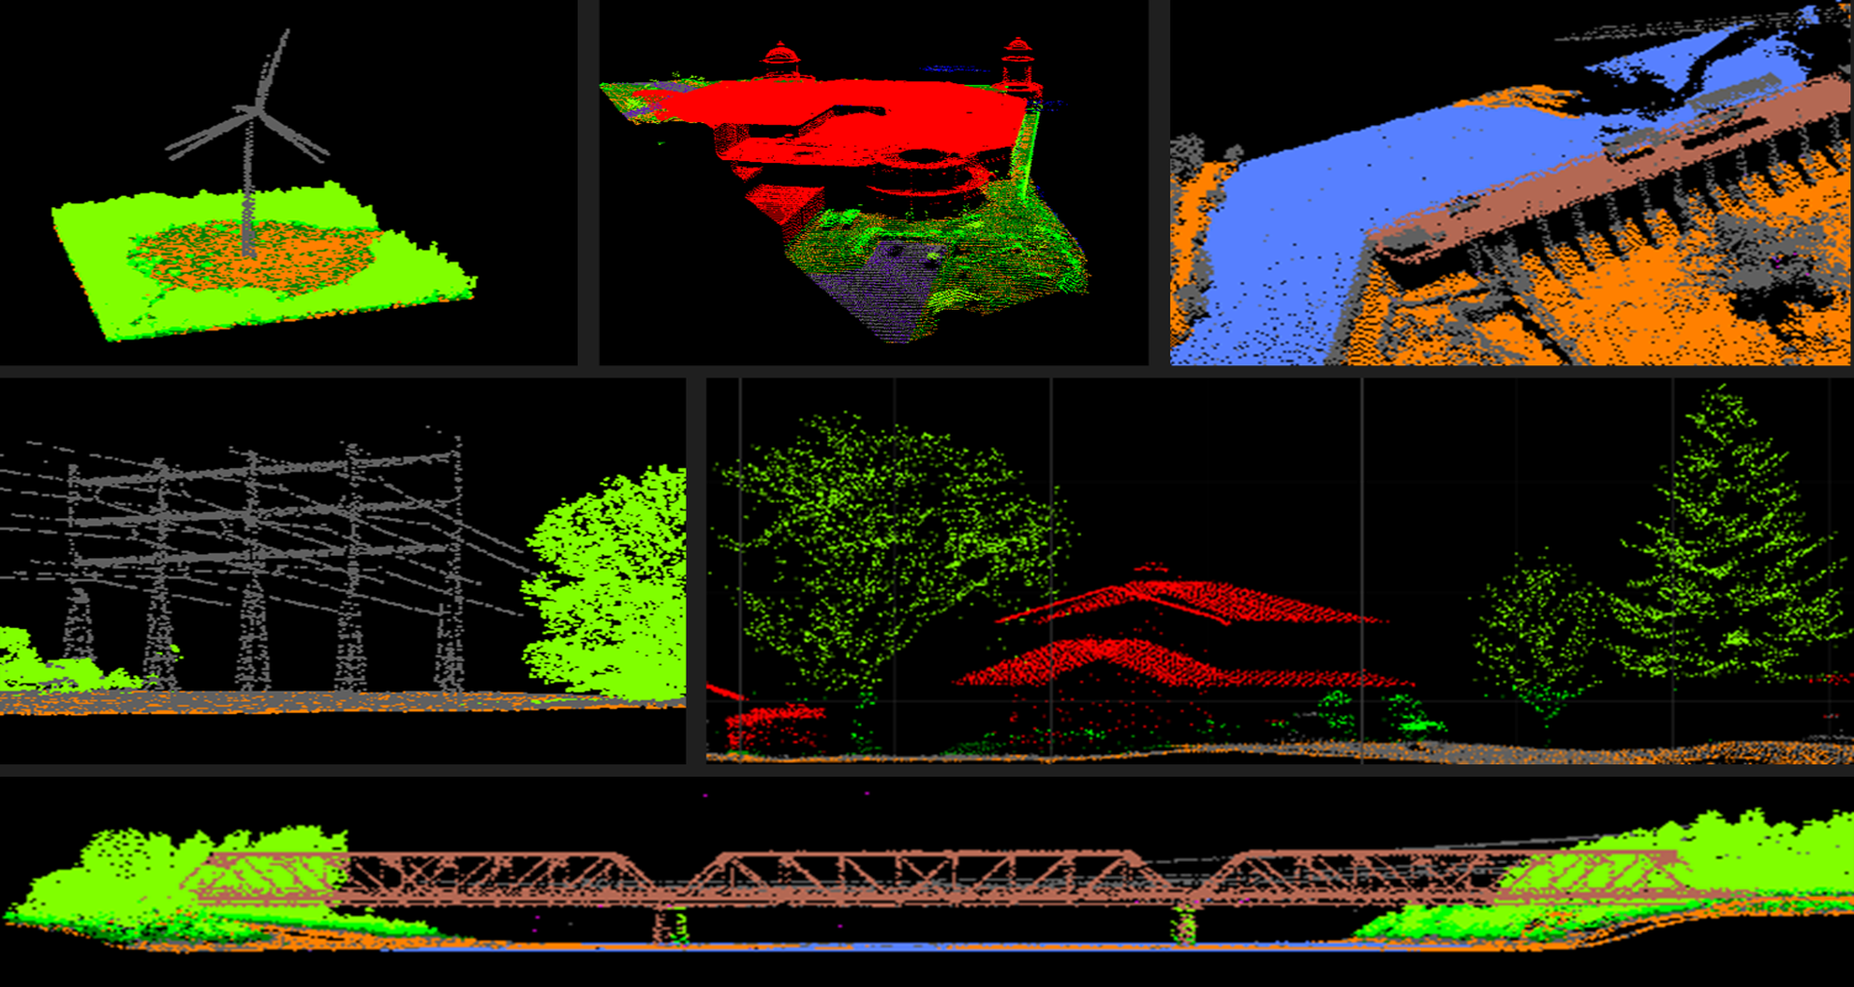 Représentation 3D de nuages de points reproduisant une éolienne, des bâtiments, un barrage, des lignes électriques, des arbres et un pont.